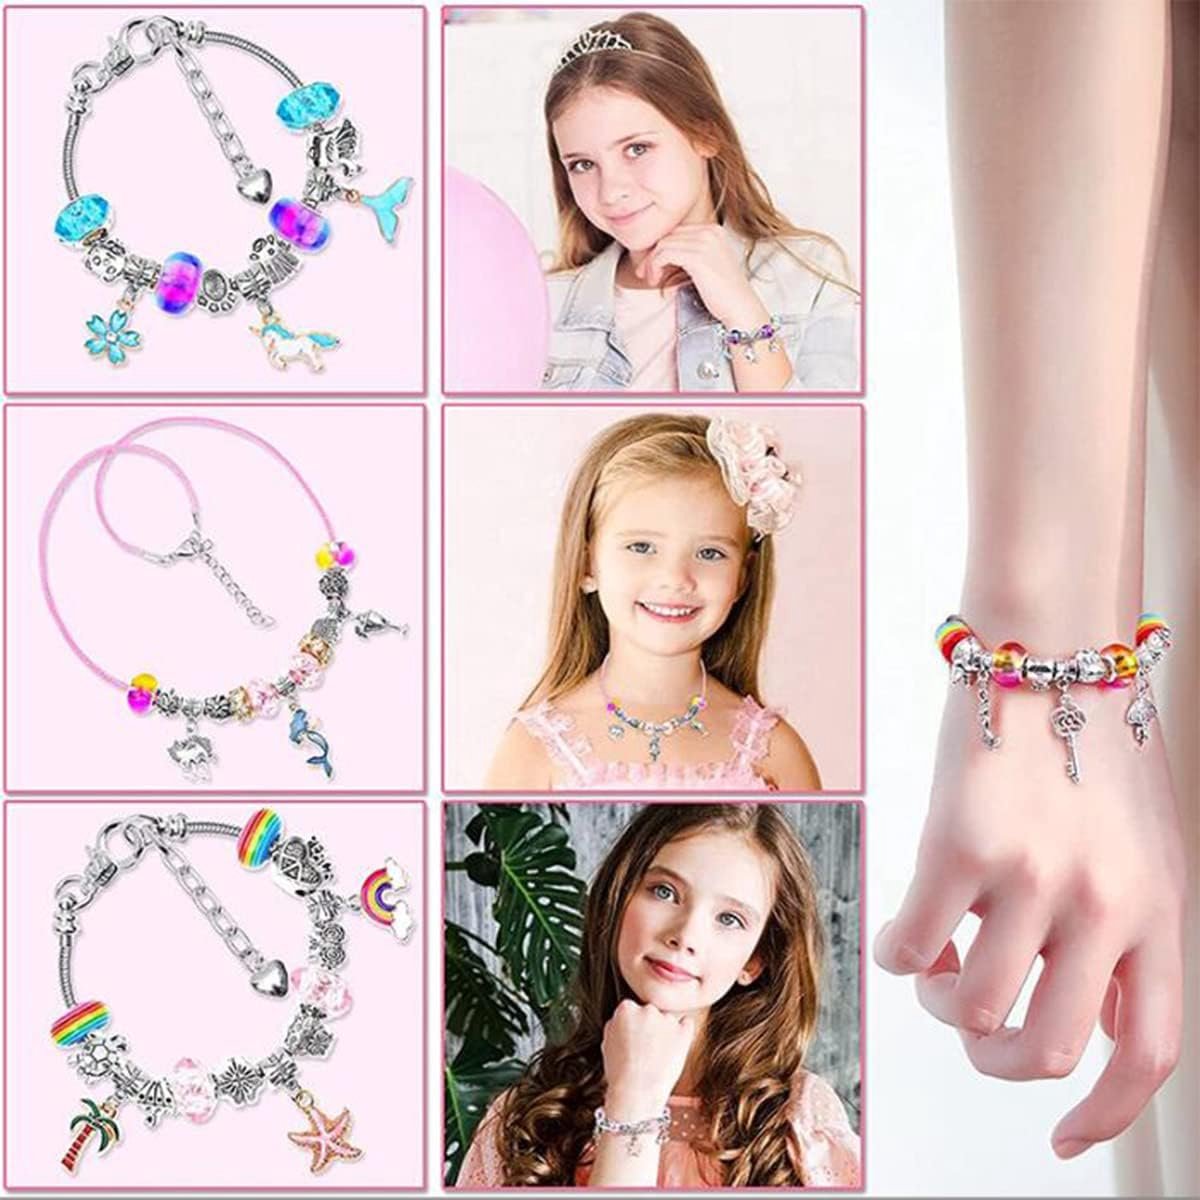 Kit de Fabrication de Bracelets Filles,DIY Charms Bracelet Perles Kit,  Cadeau Jouet Noël pour Enfant Fille 5-13 Ans